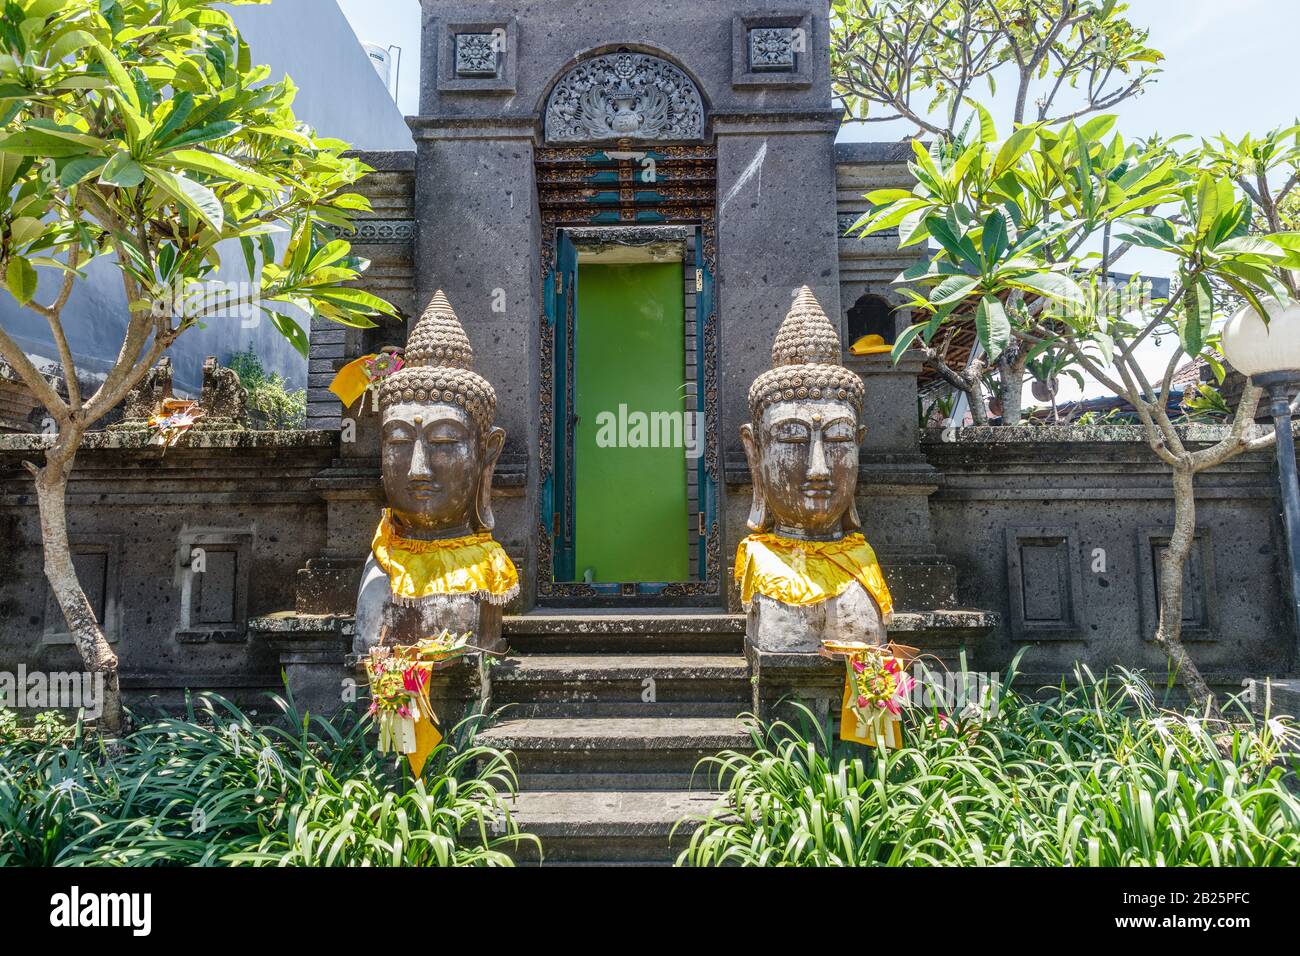 Steinstatuen aus zwei Buddha-Köpfen in goldenem "prada"-Stoff in der Nähe eines traditionellen balinesischen Hauses in Desa Munggu, Bali, Indonesien. Stockfoto